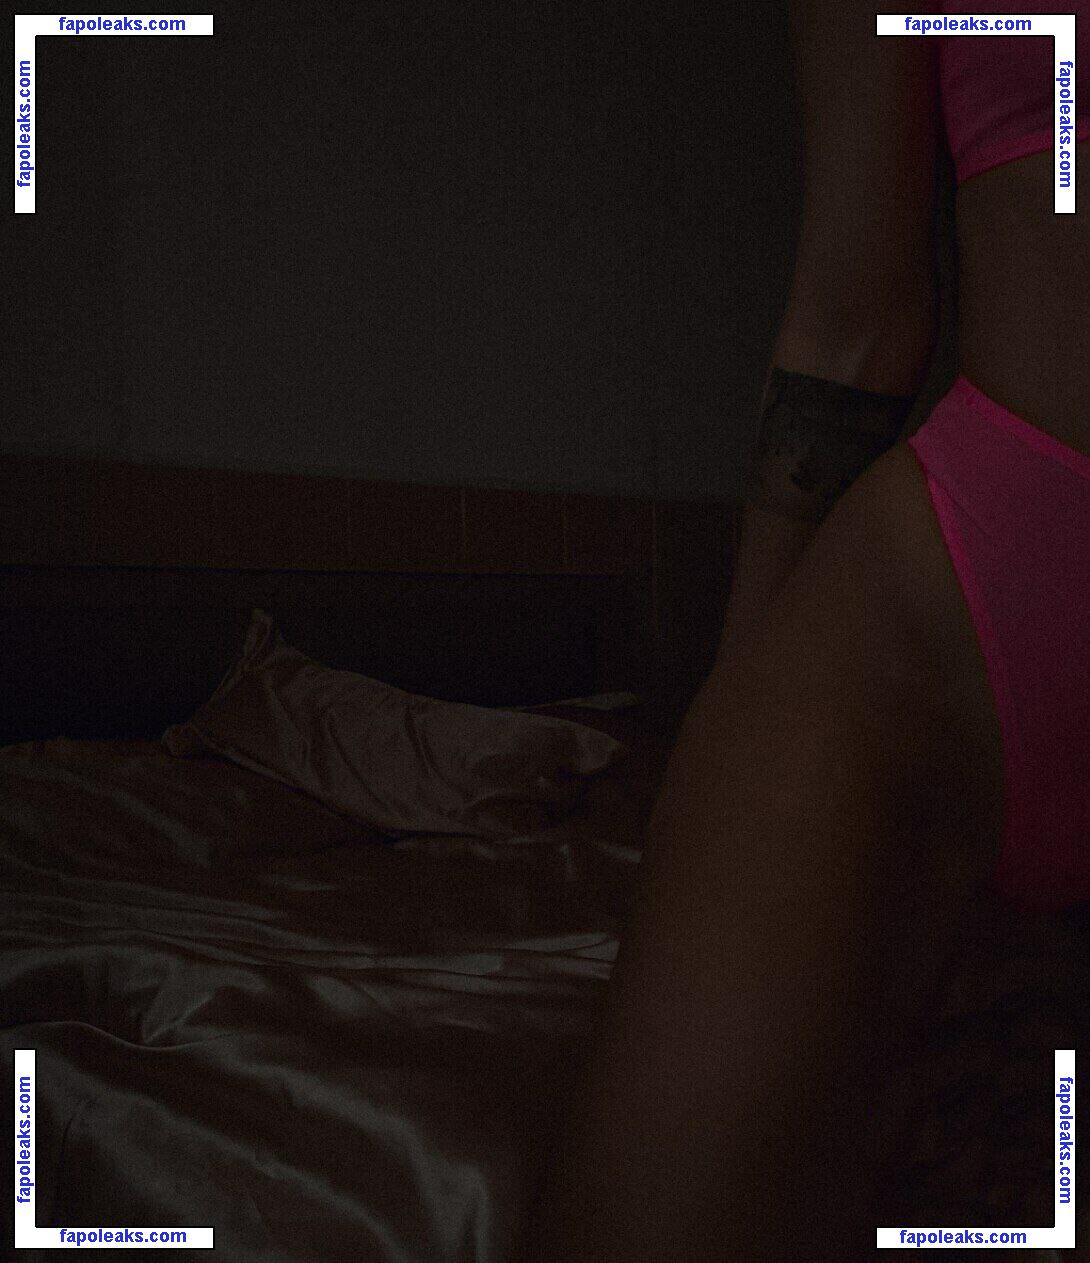 Anastasia Steklova / astklv nude photo #0249 from OnlyFans